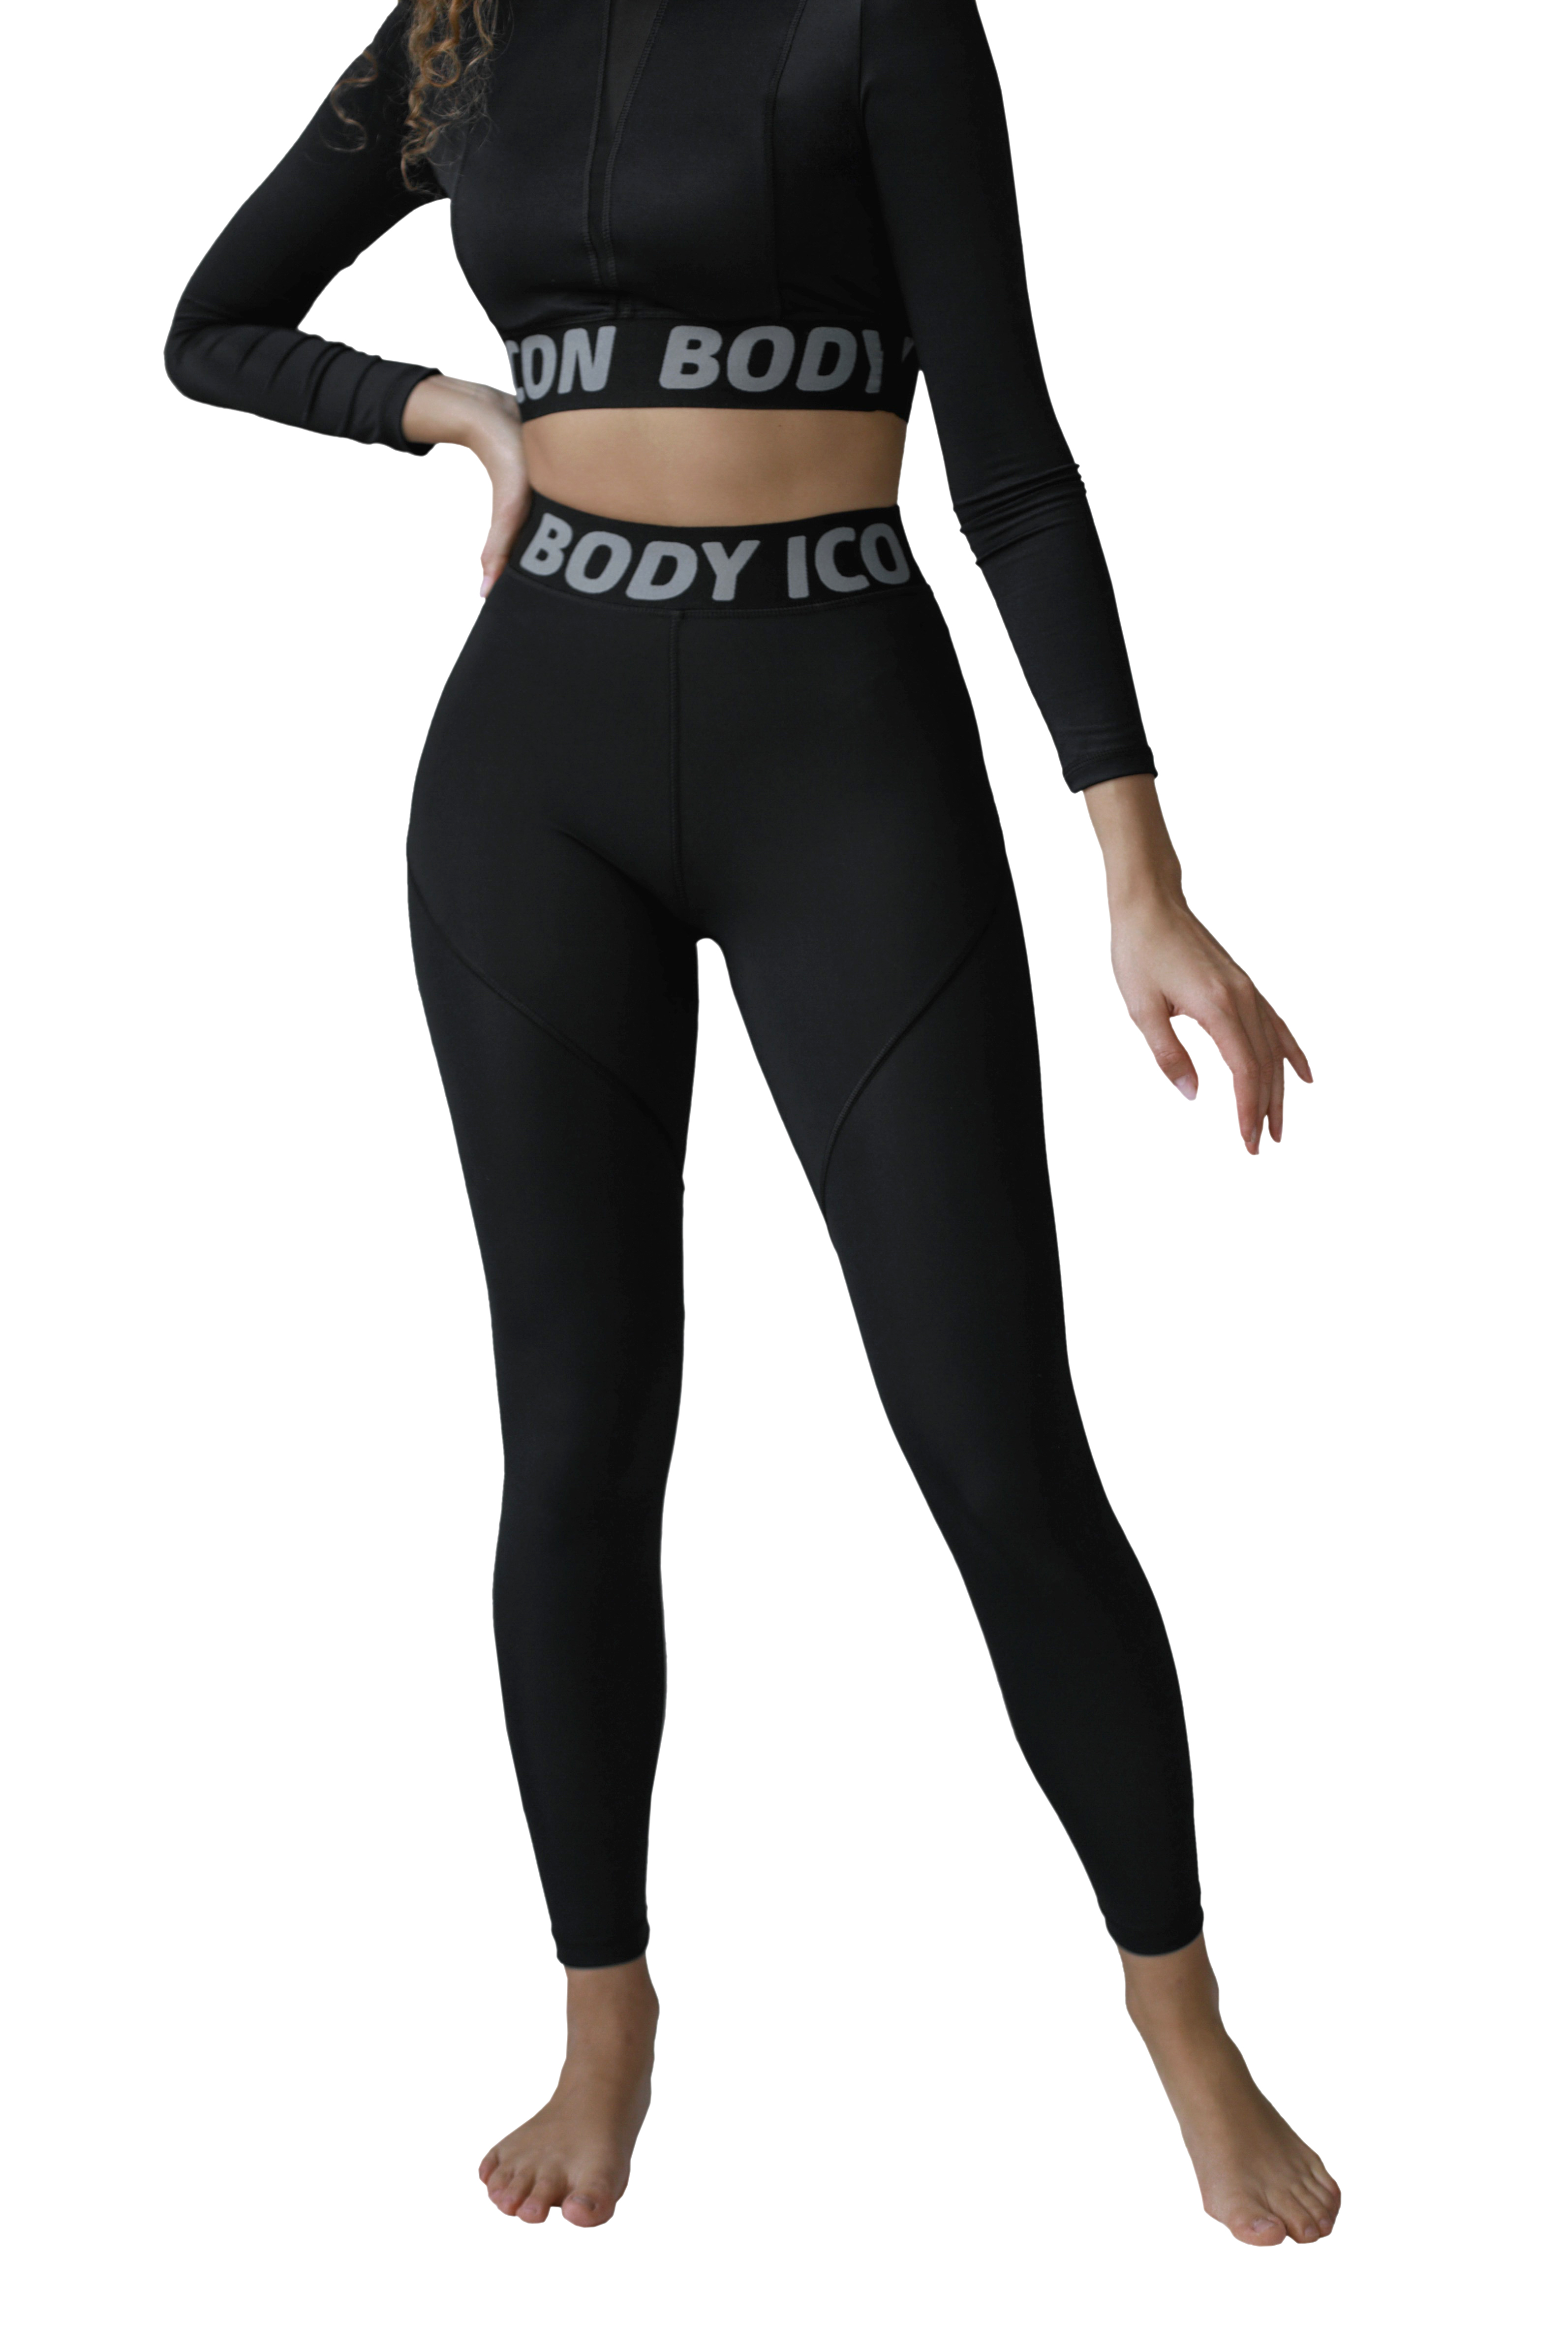 Спортивные леггинсы женские BODY ICON LS-1005 черные XS